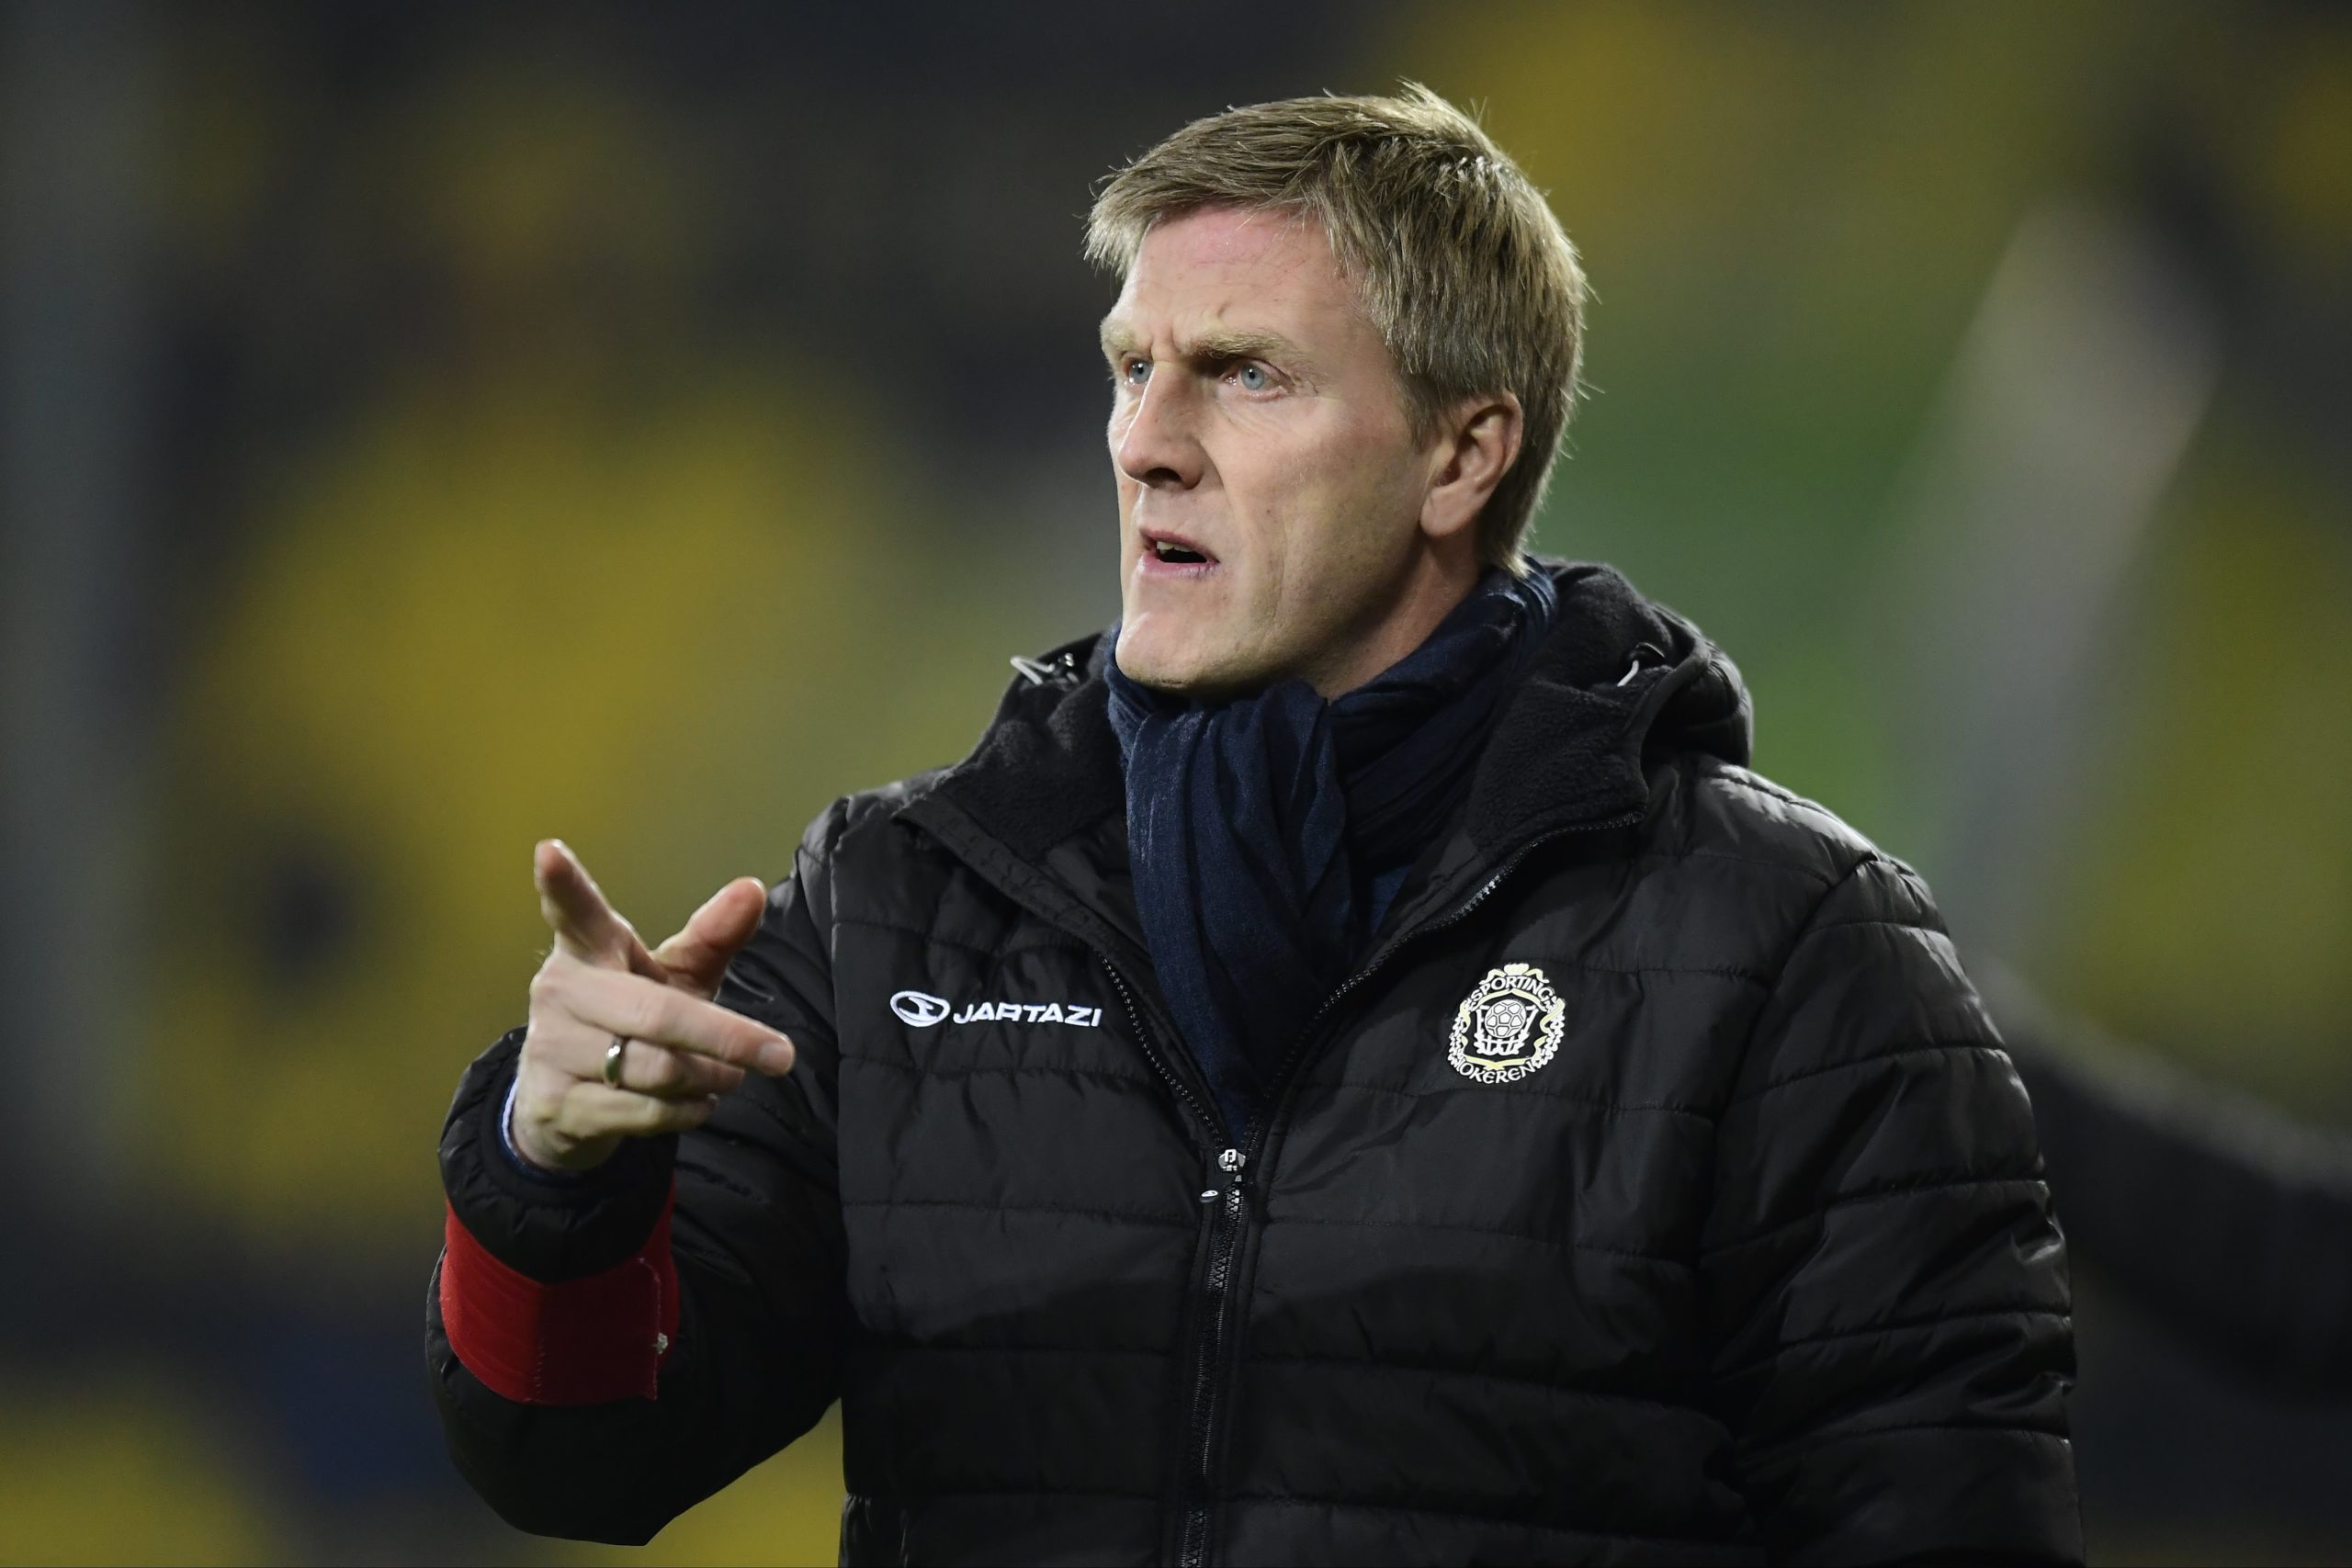 KR Reykjavik manager Runar Kristinsson rueing Celtic's competitive advantage